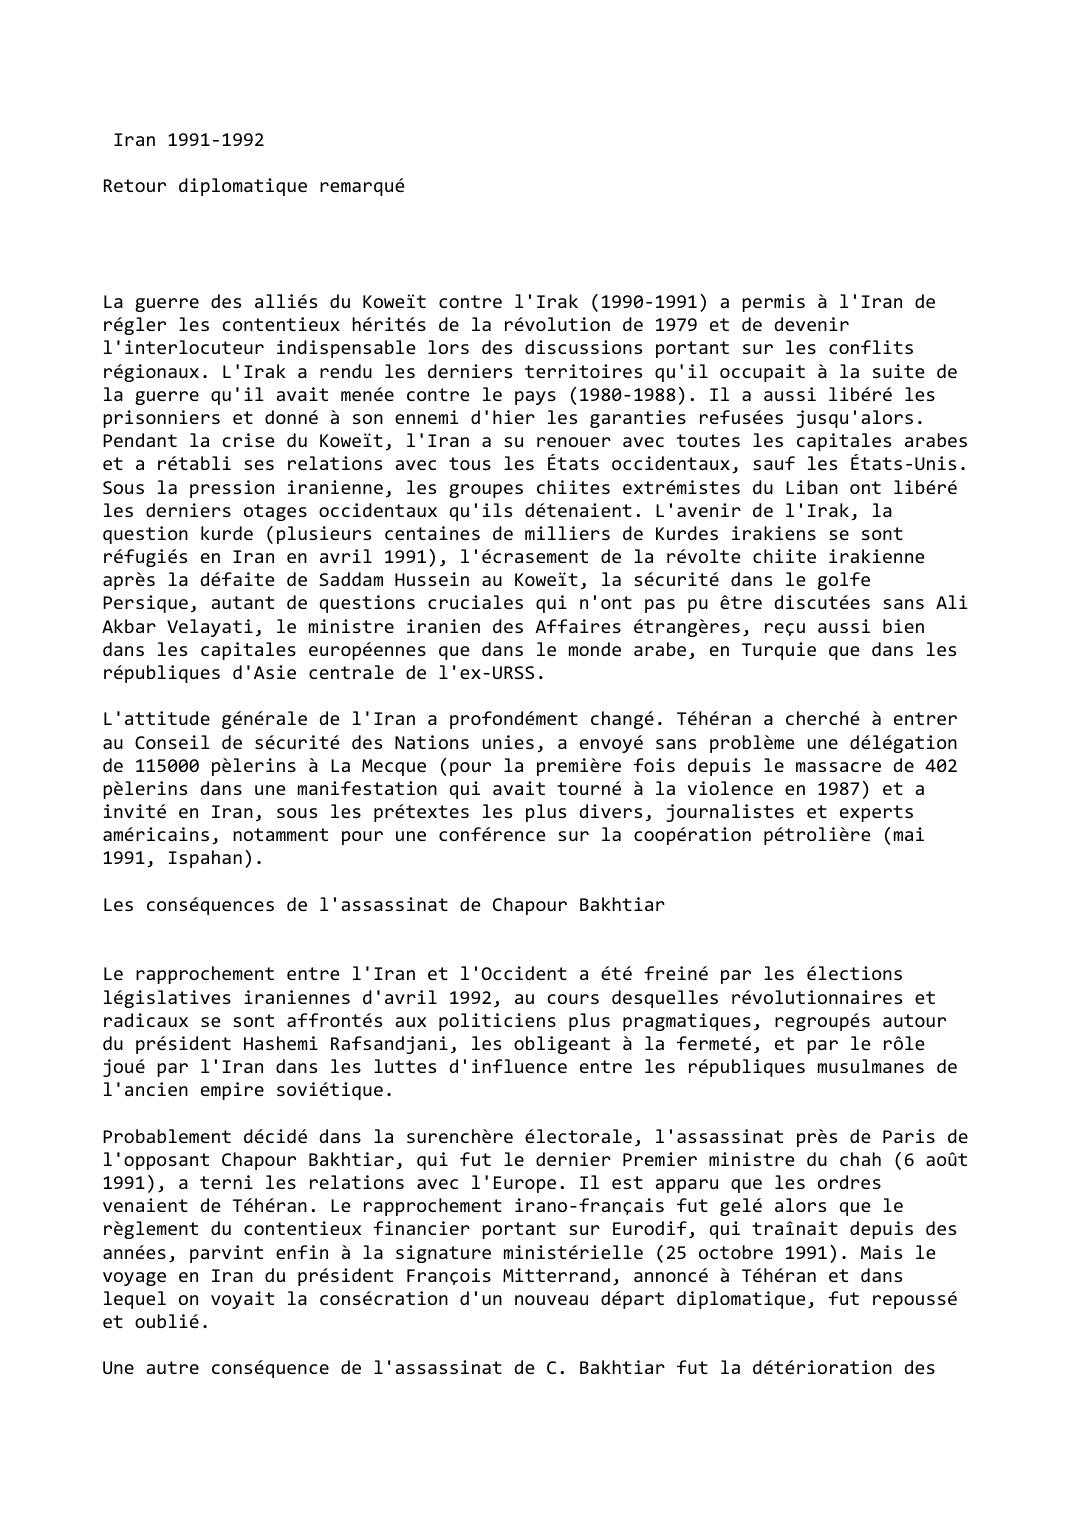 Prévisualisation du document Iran (1991-1992)

Retour diplomatique remarqué